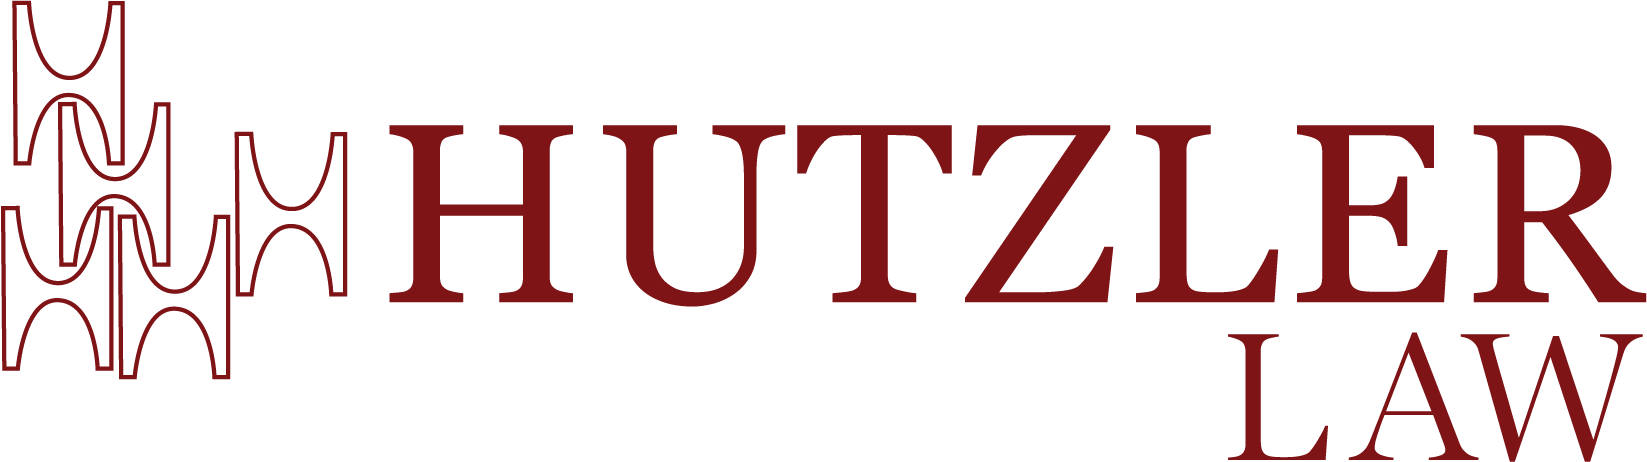 Logotipo de la Ley Hutzler